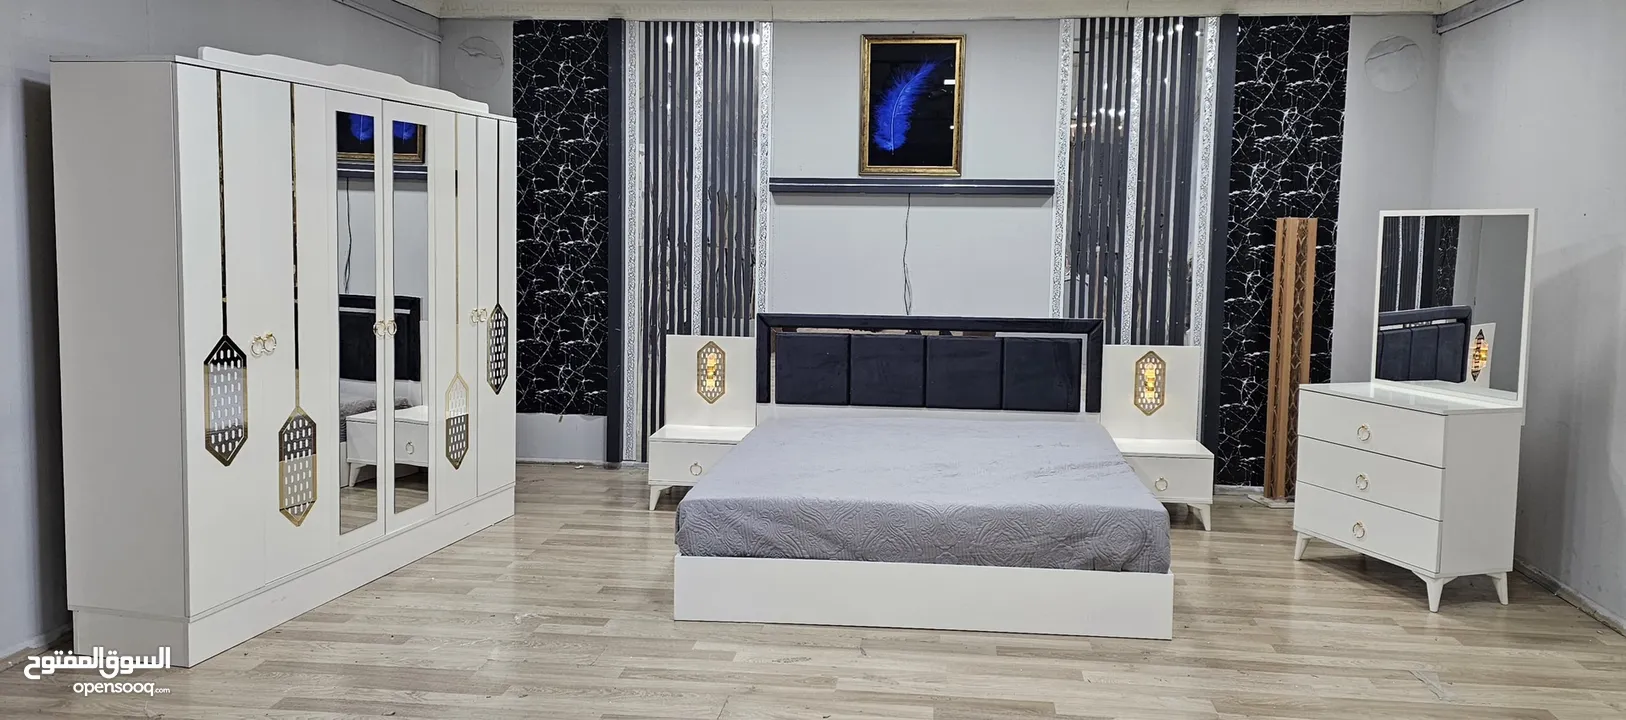 غرف نوم تركي 7 قطع شامل التركيب والدوشق الطبي مجاني